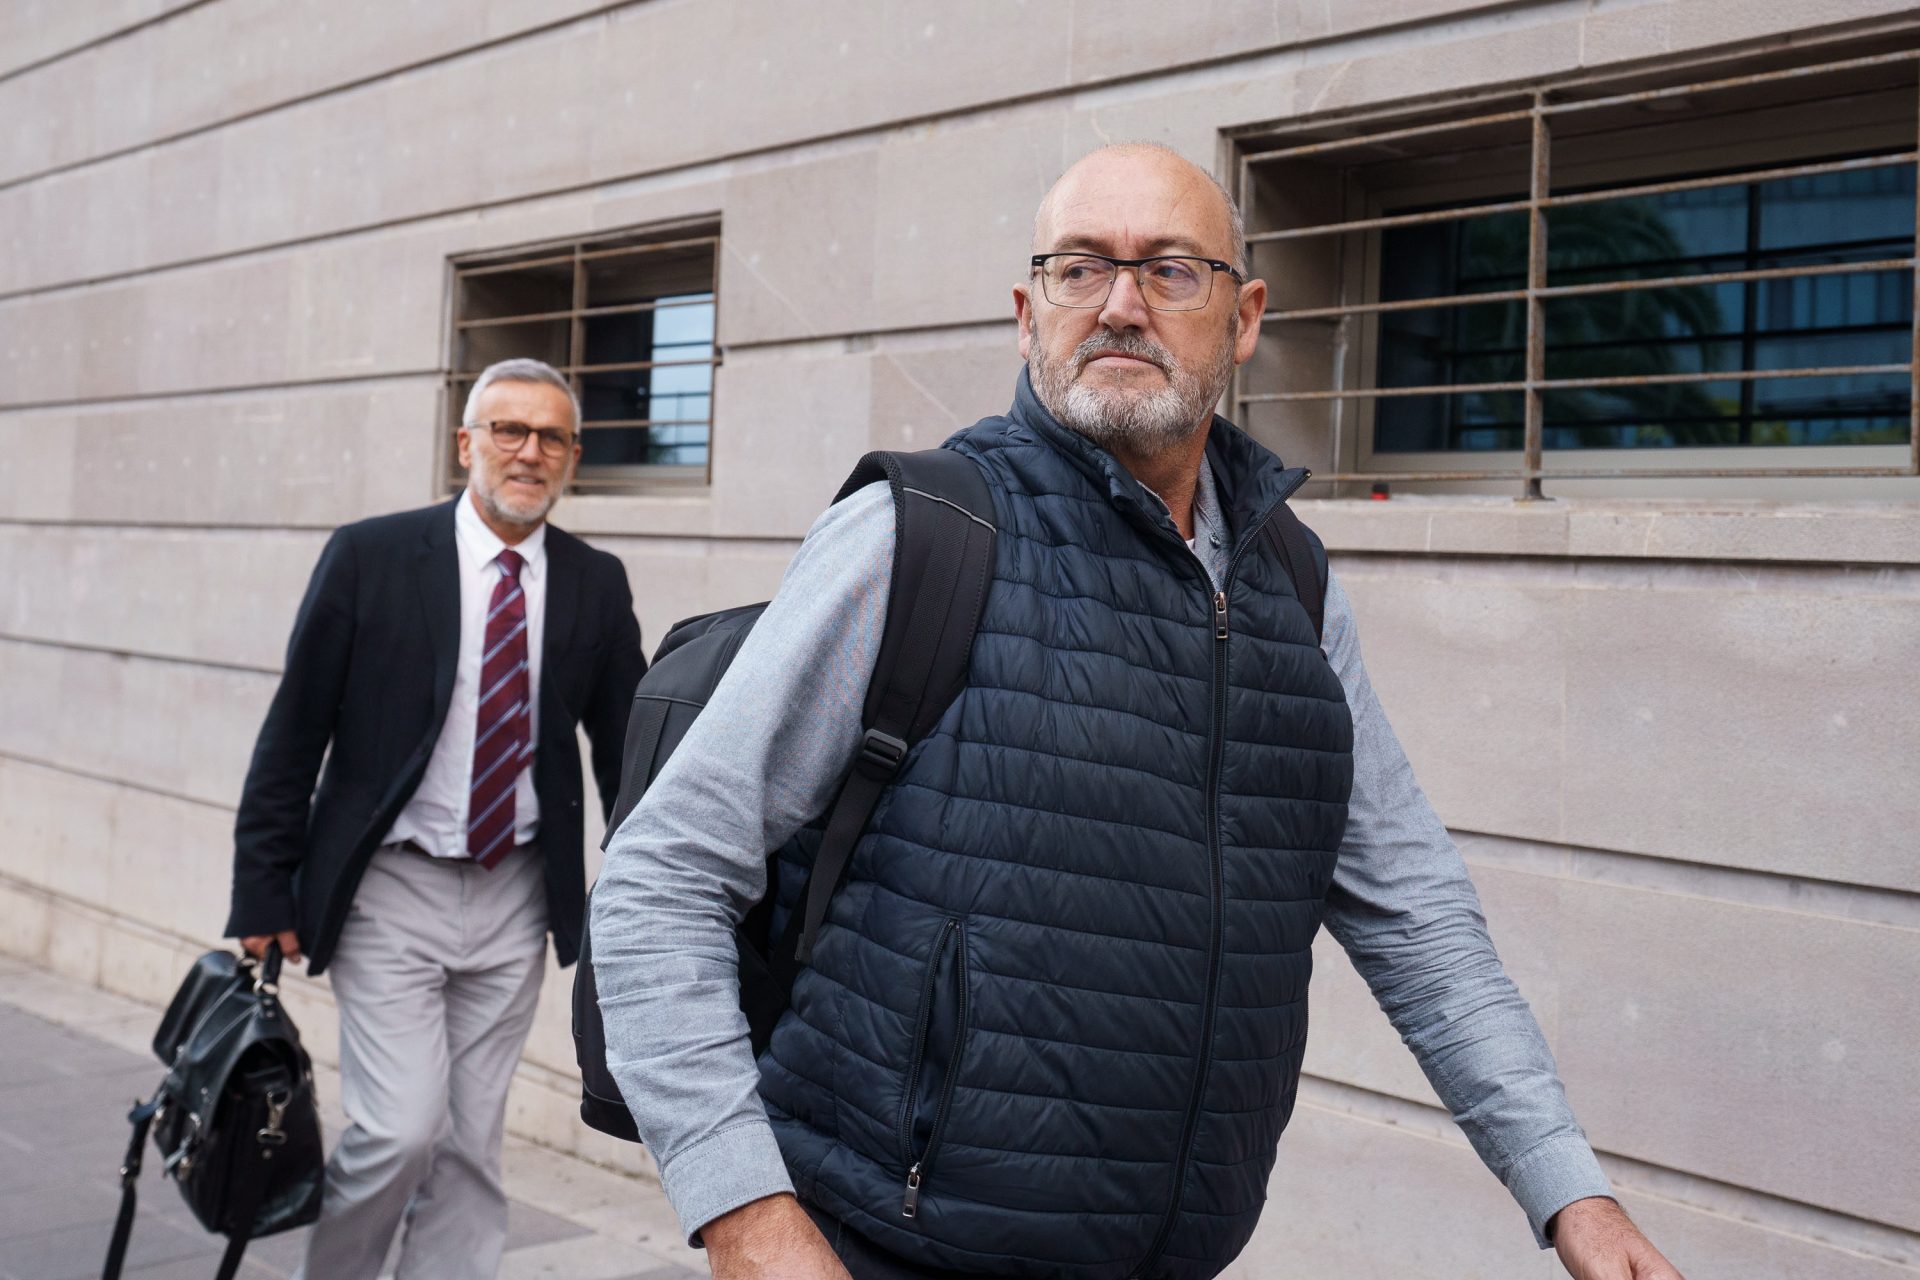 El exdiputado del PSOE Juan Bernardo Fuentes Curbelo abandona los Juzgados de Santa Cruz de Tenerife tras declarar ante la juez que instruye el "caso Mediador". EFE/Ramón de la Rocha